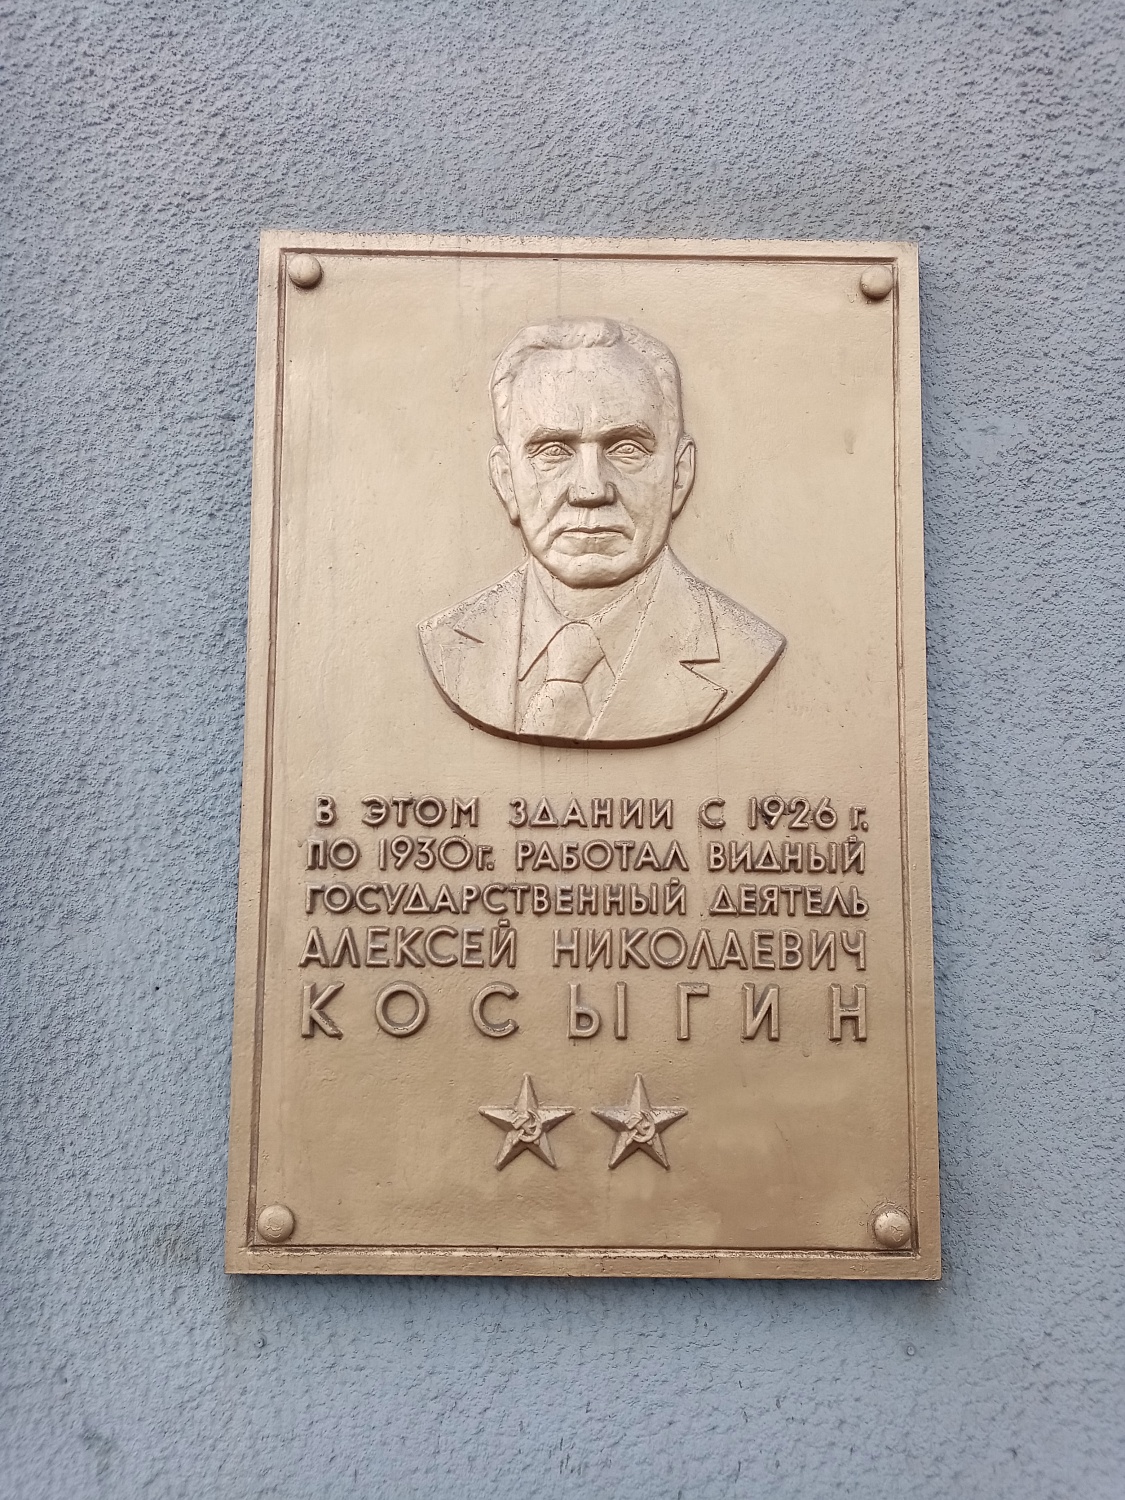 Мемориальная доска Алексея Николаевича Косыгина с годами его работы в здании Облпотребсоюза.